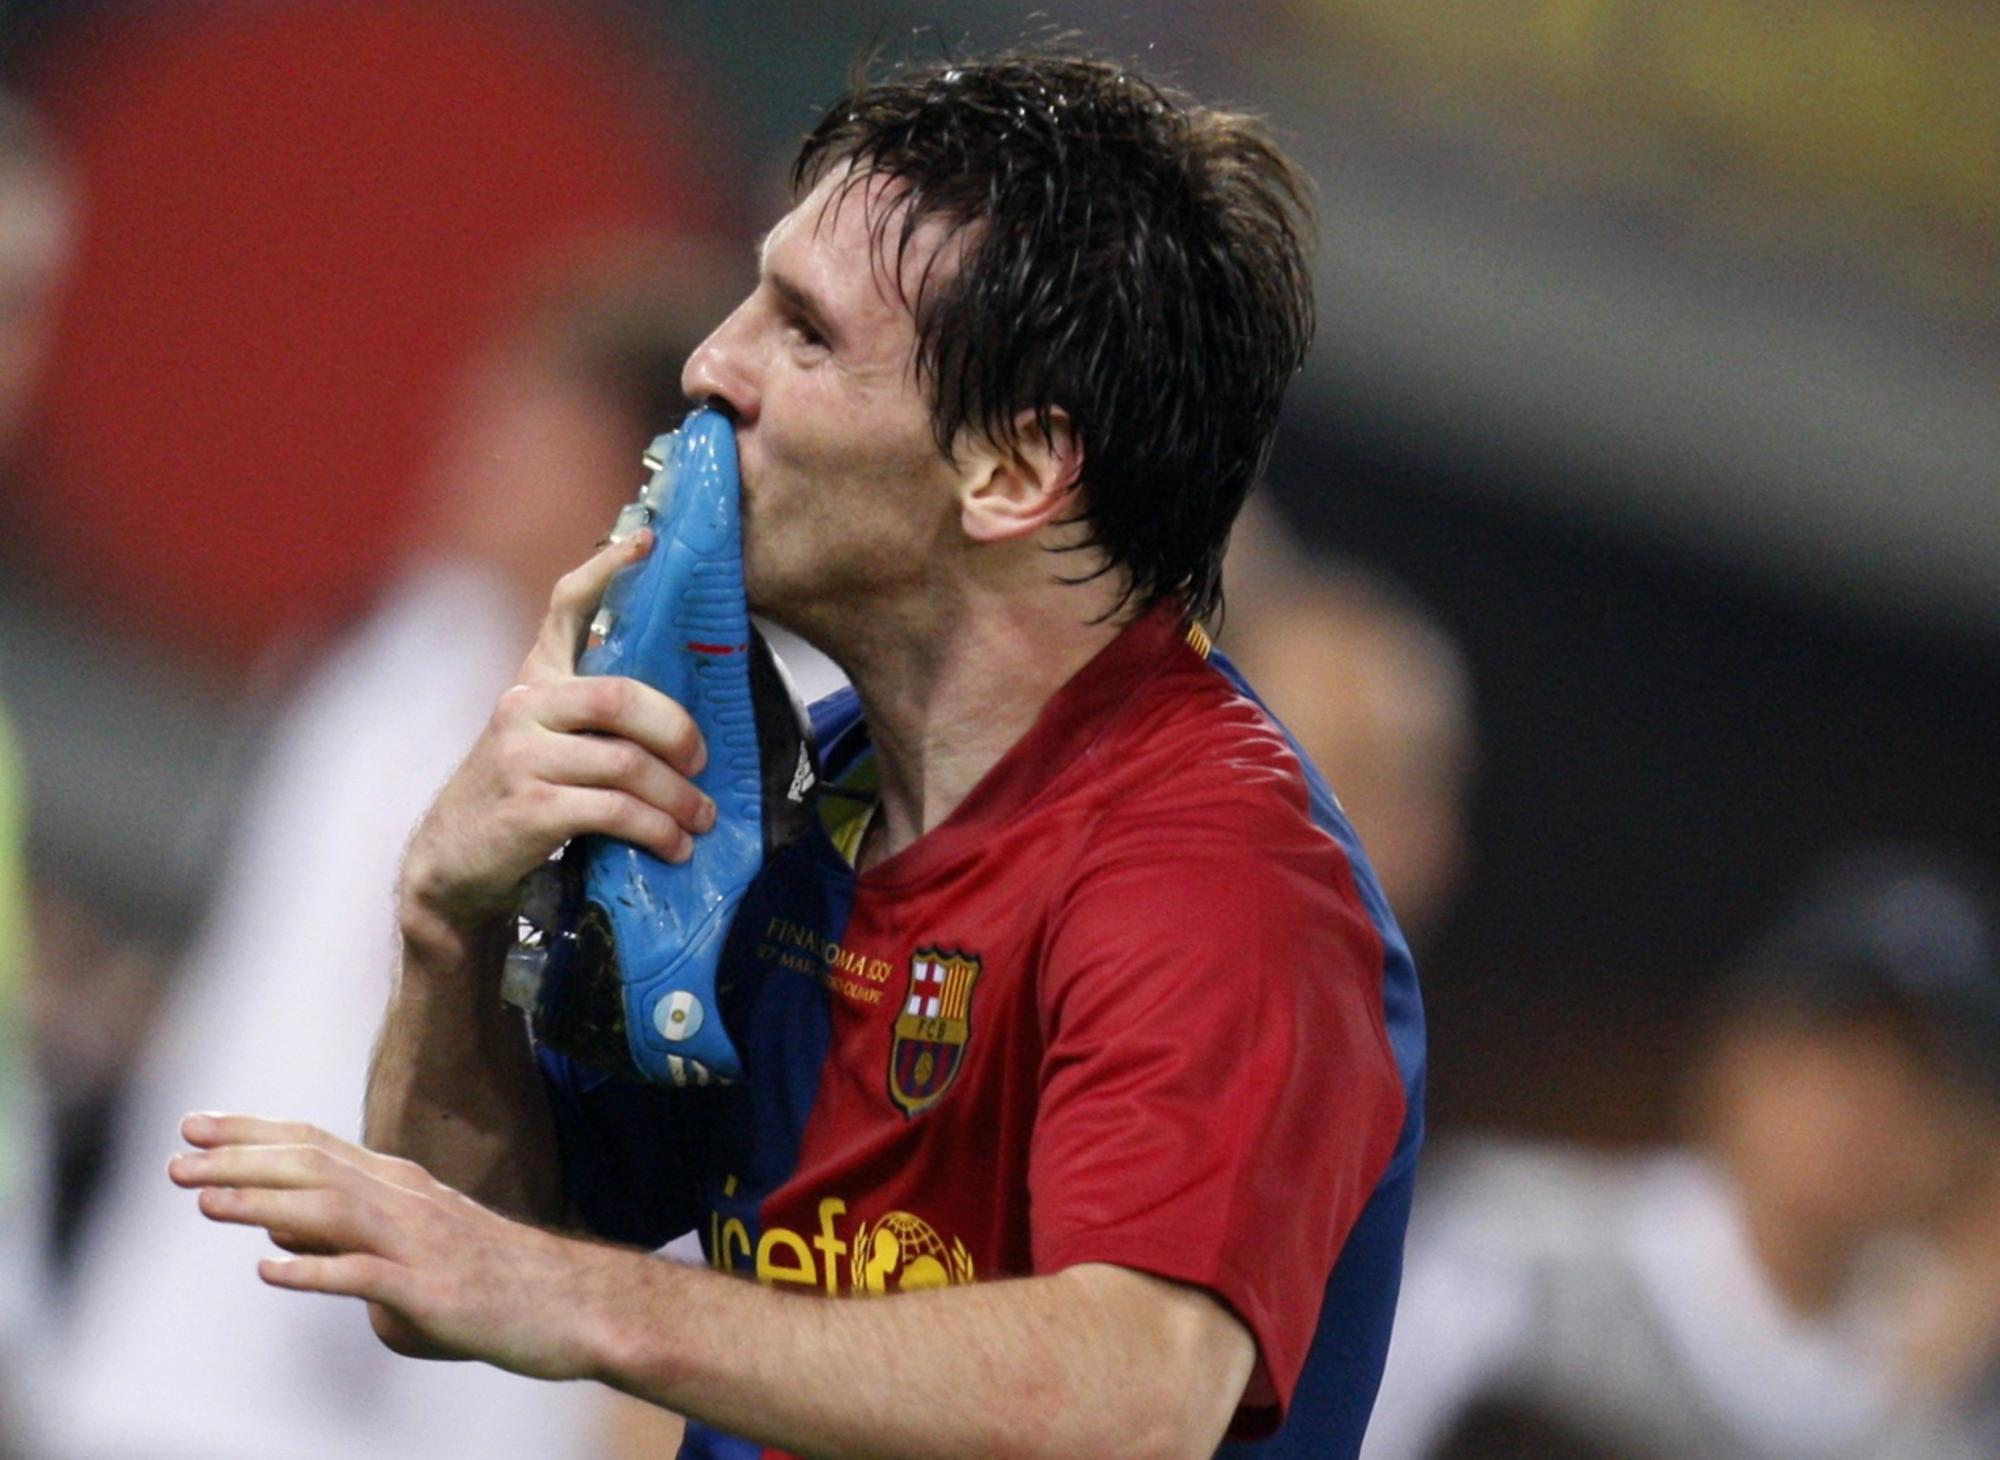 Messi: Siêu sao bóng đá Lionel Messi đã ghi được nhiều bàn thắng đẹp mắt trong sự nghiệp của mình. Khám phá hình ảnh liên quan đến Messi để được đắm chìm trong những khoảnh khắc đáng nhớ của ngôi sao này.